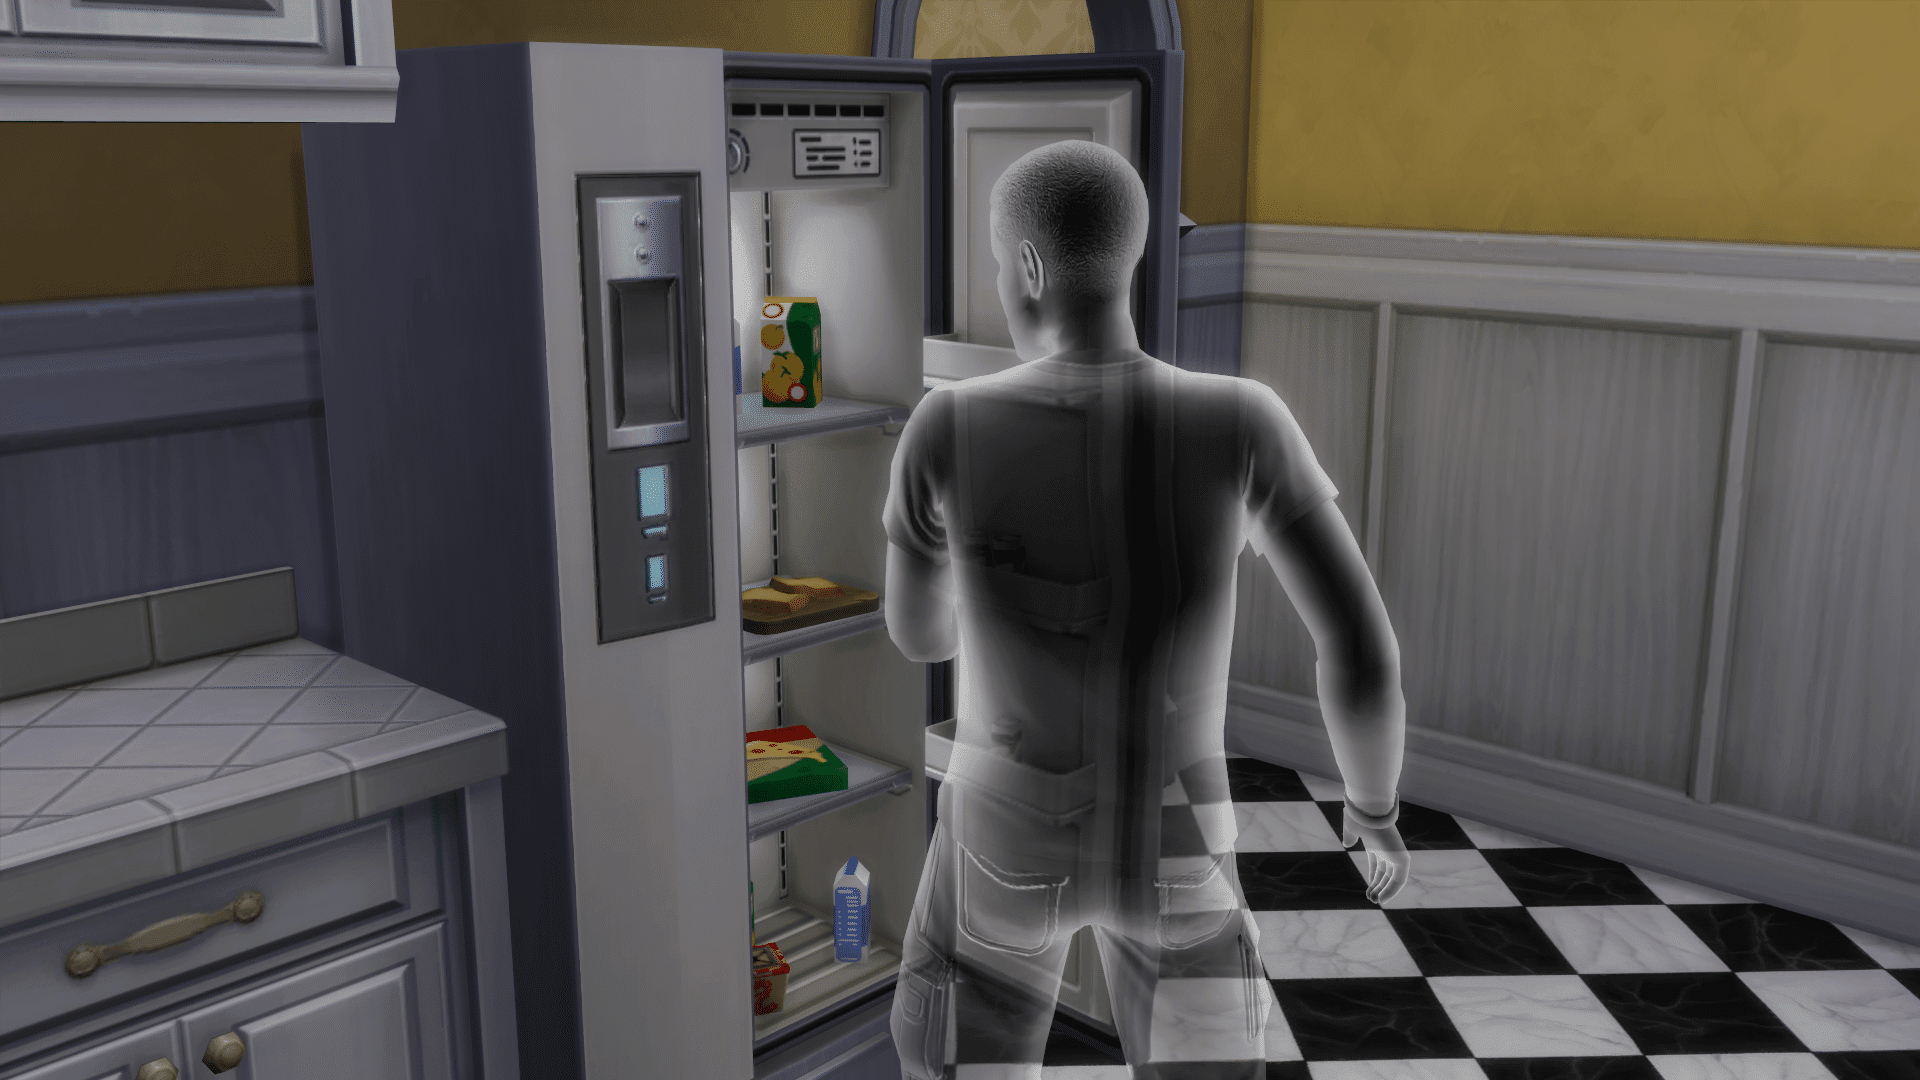 Comment devenir un fantôme dans Les Sims 4 6 Capacités fantôme dans les sims 4.jpg